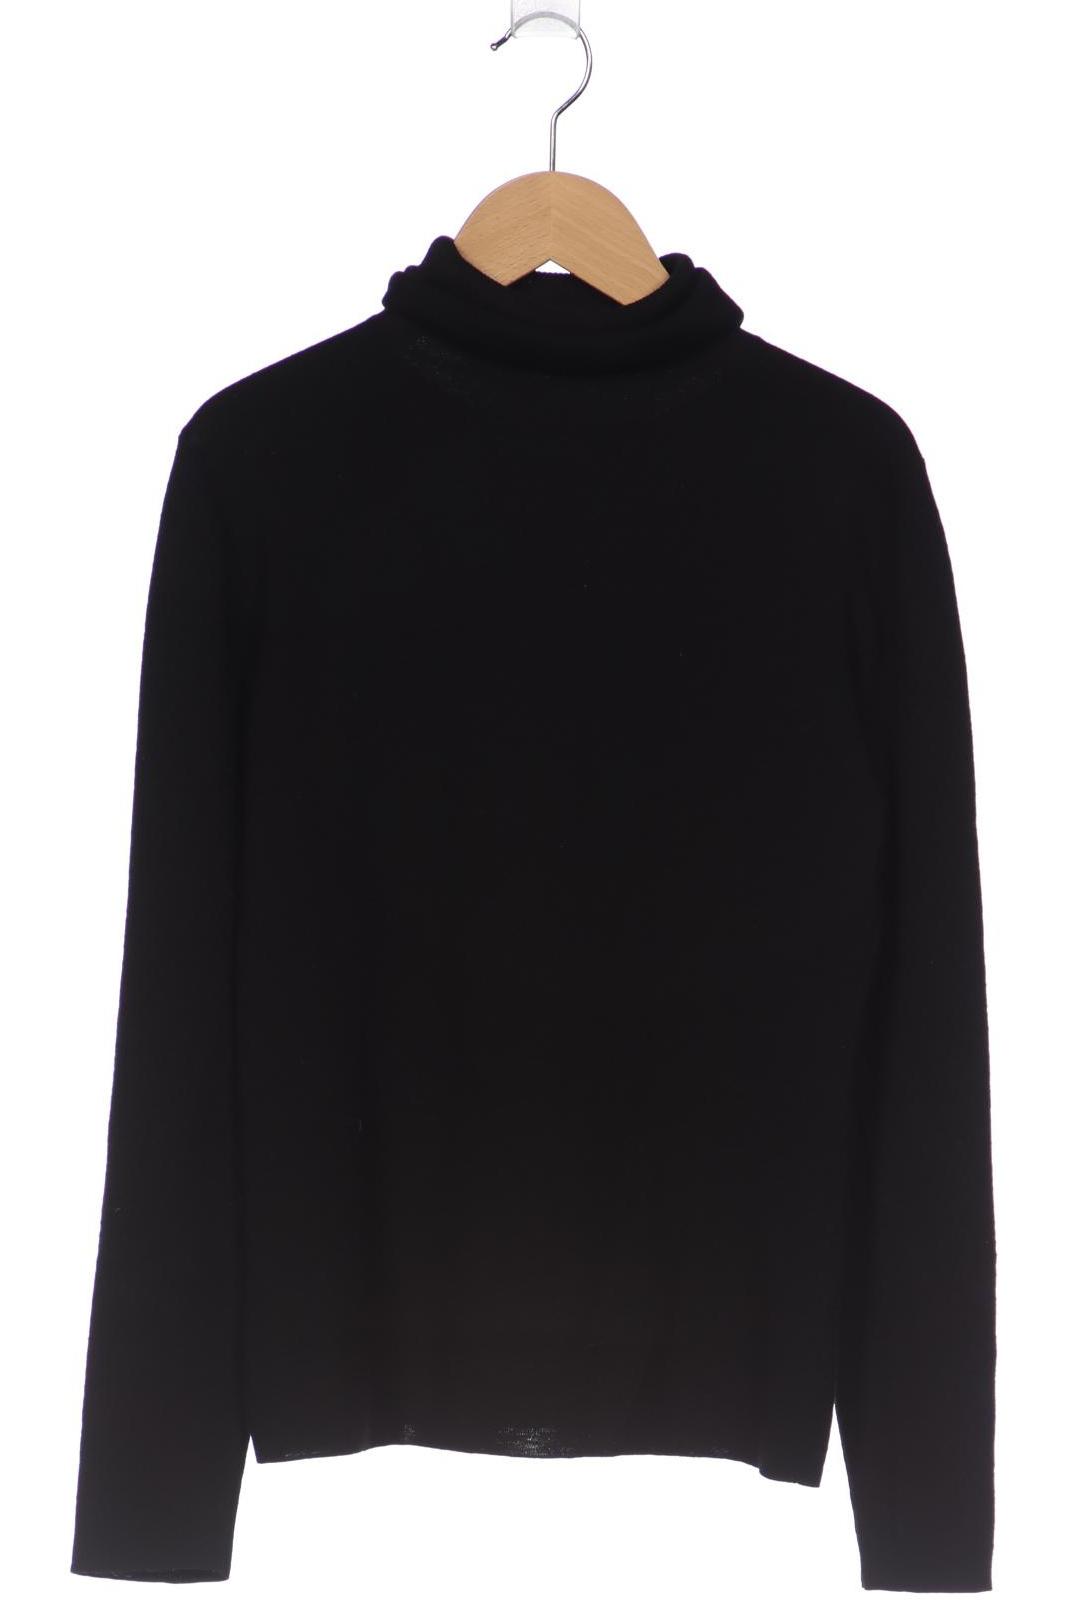 Strenesse Damen Pullover, schwarz, Gr. 38 von Strenesse